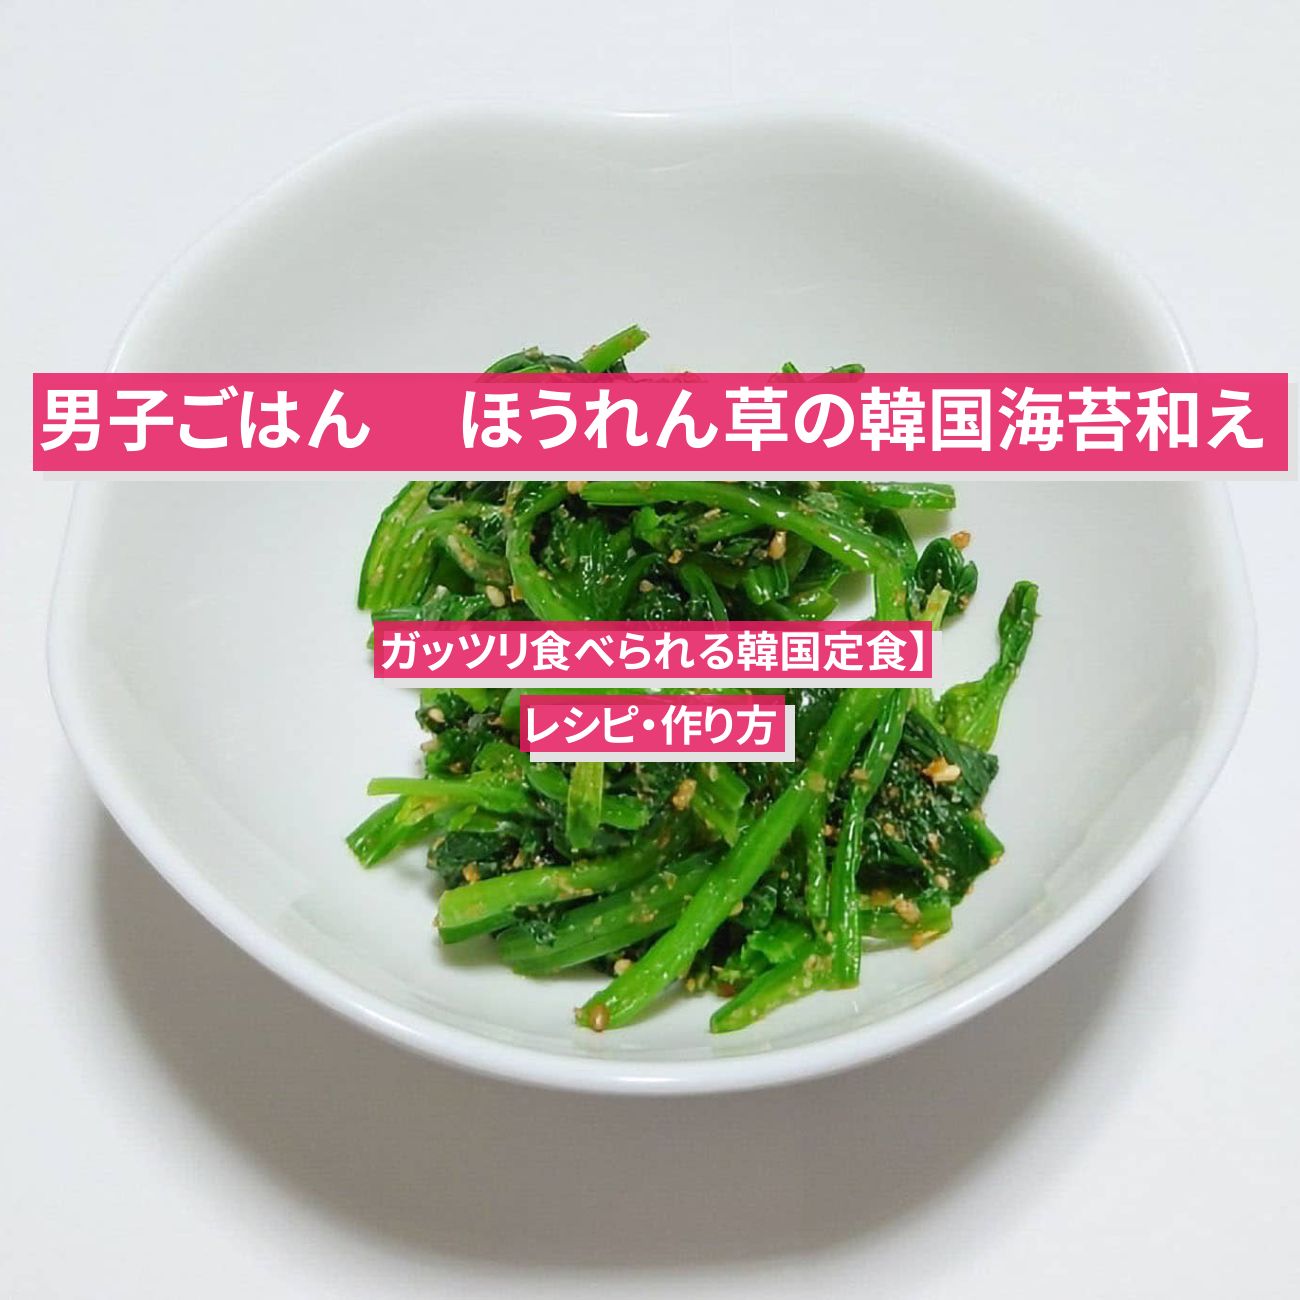 【男子ごはん】『ほうれん草の韓国海苔和え』のレシピ・作り方